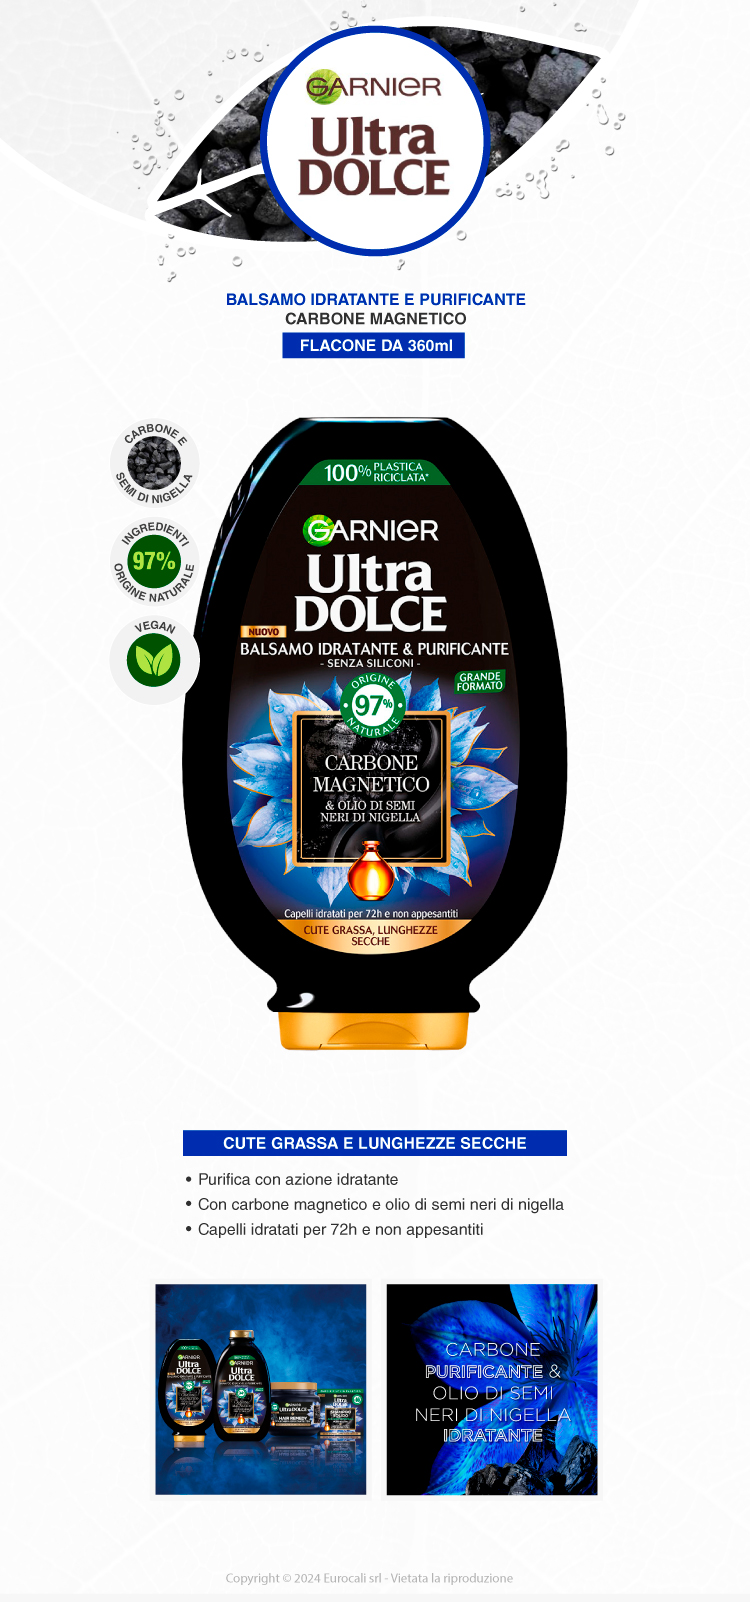 Garnier Ultra Dolce Balsamo Idratante Purificante Carbone Magnetico 360ml